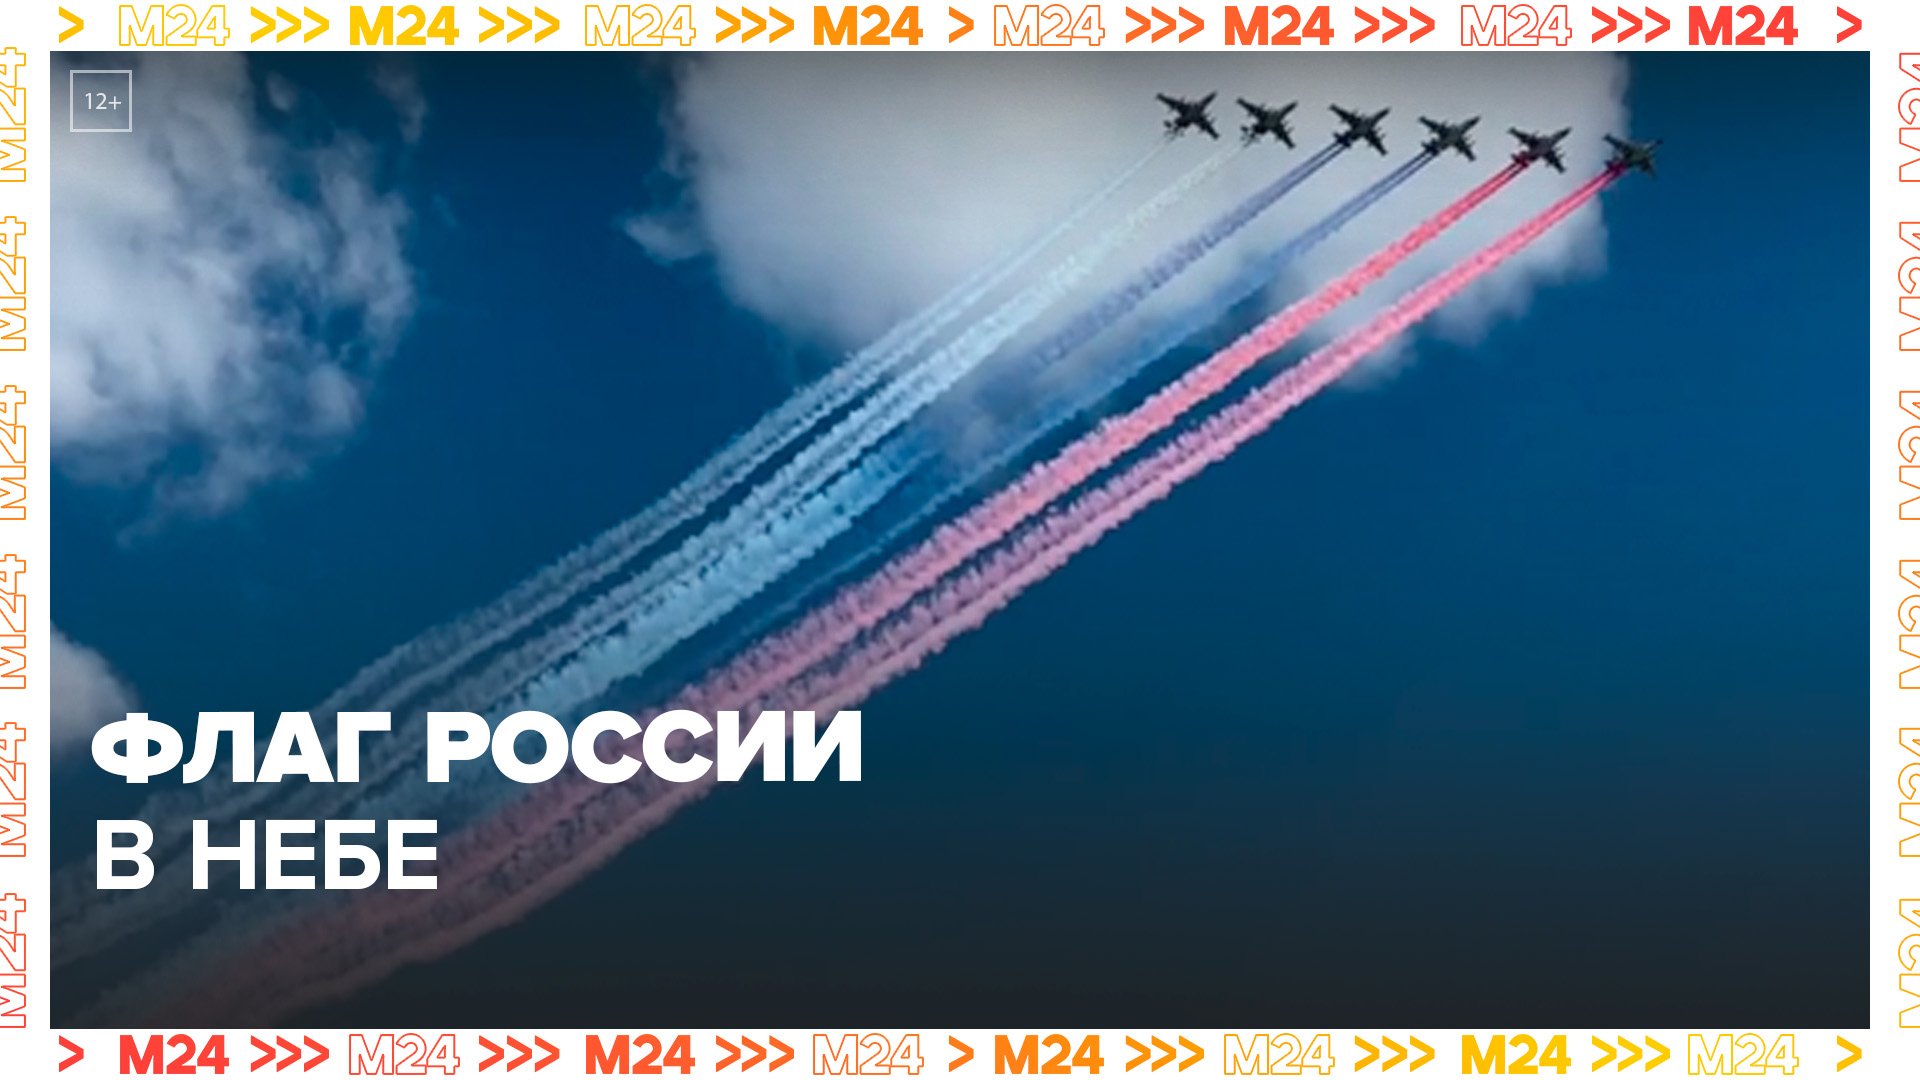 Флаг России в небе над центром Москвы - Москва 24